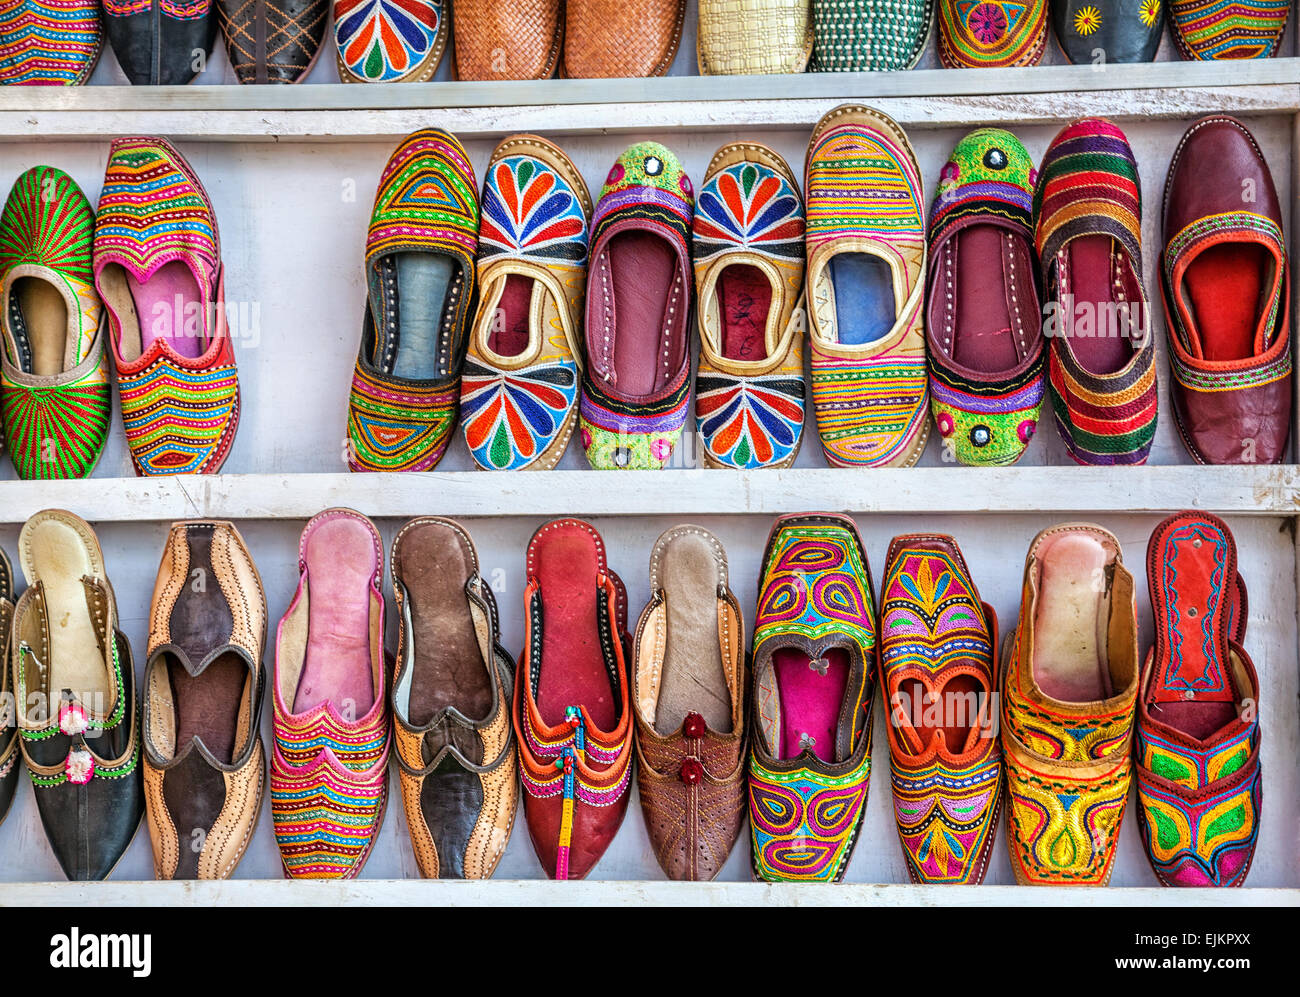 Pantofole etniche immagini e fotografie stock ad alta risoluzione - Alamy